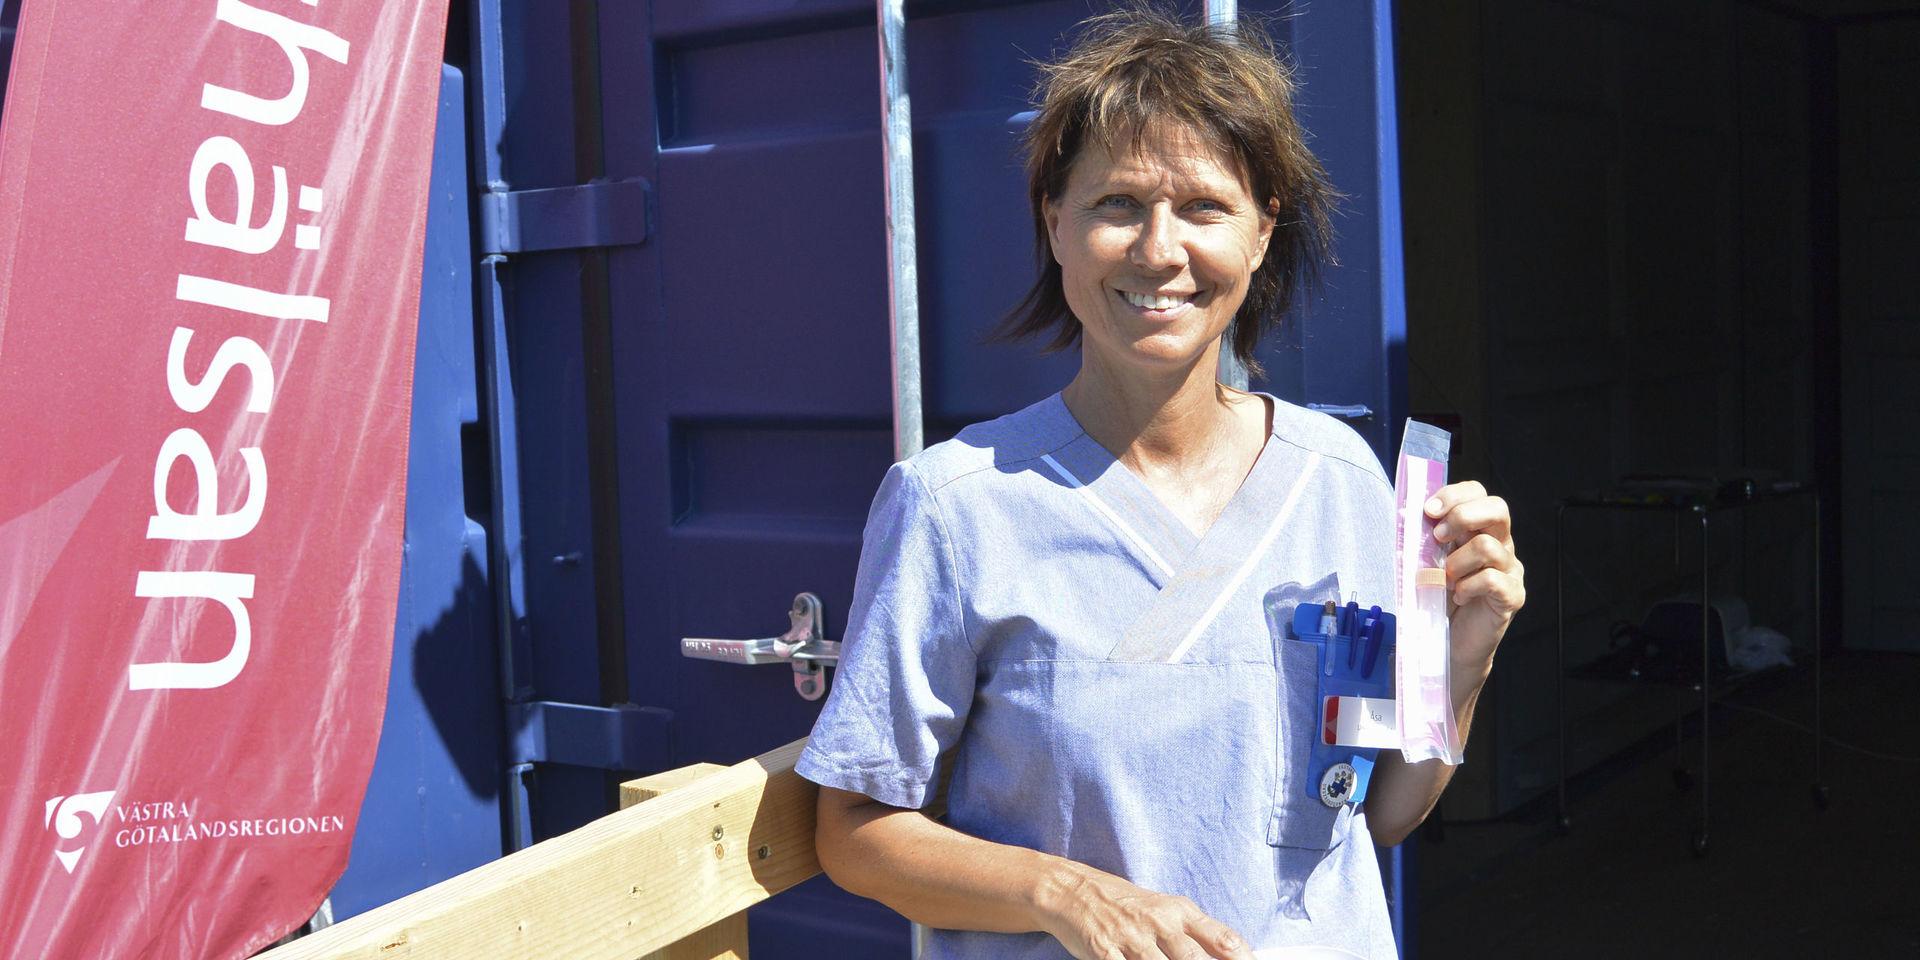 Åsa Lind, undersköterska på Närhälsan i Tanumshede, framför den container som använd för topsning och provtagning.